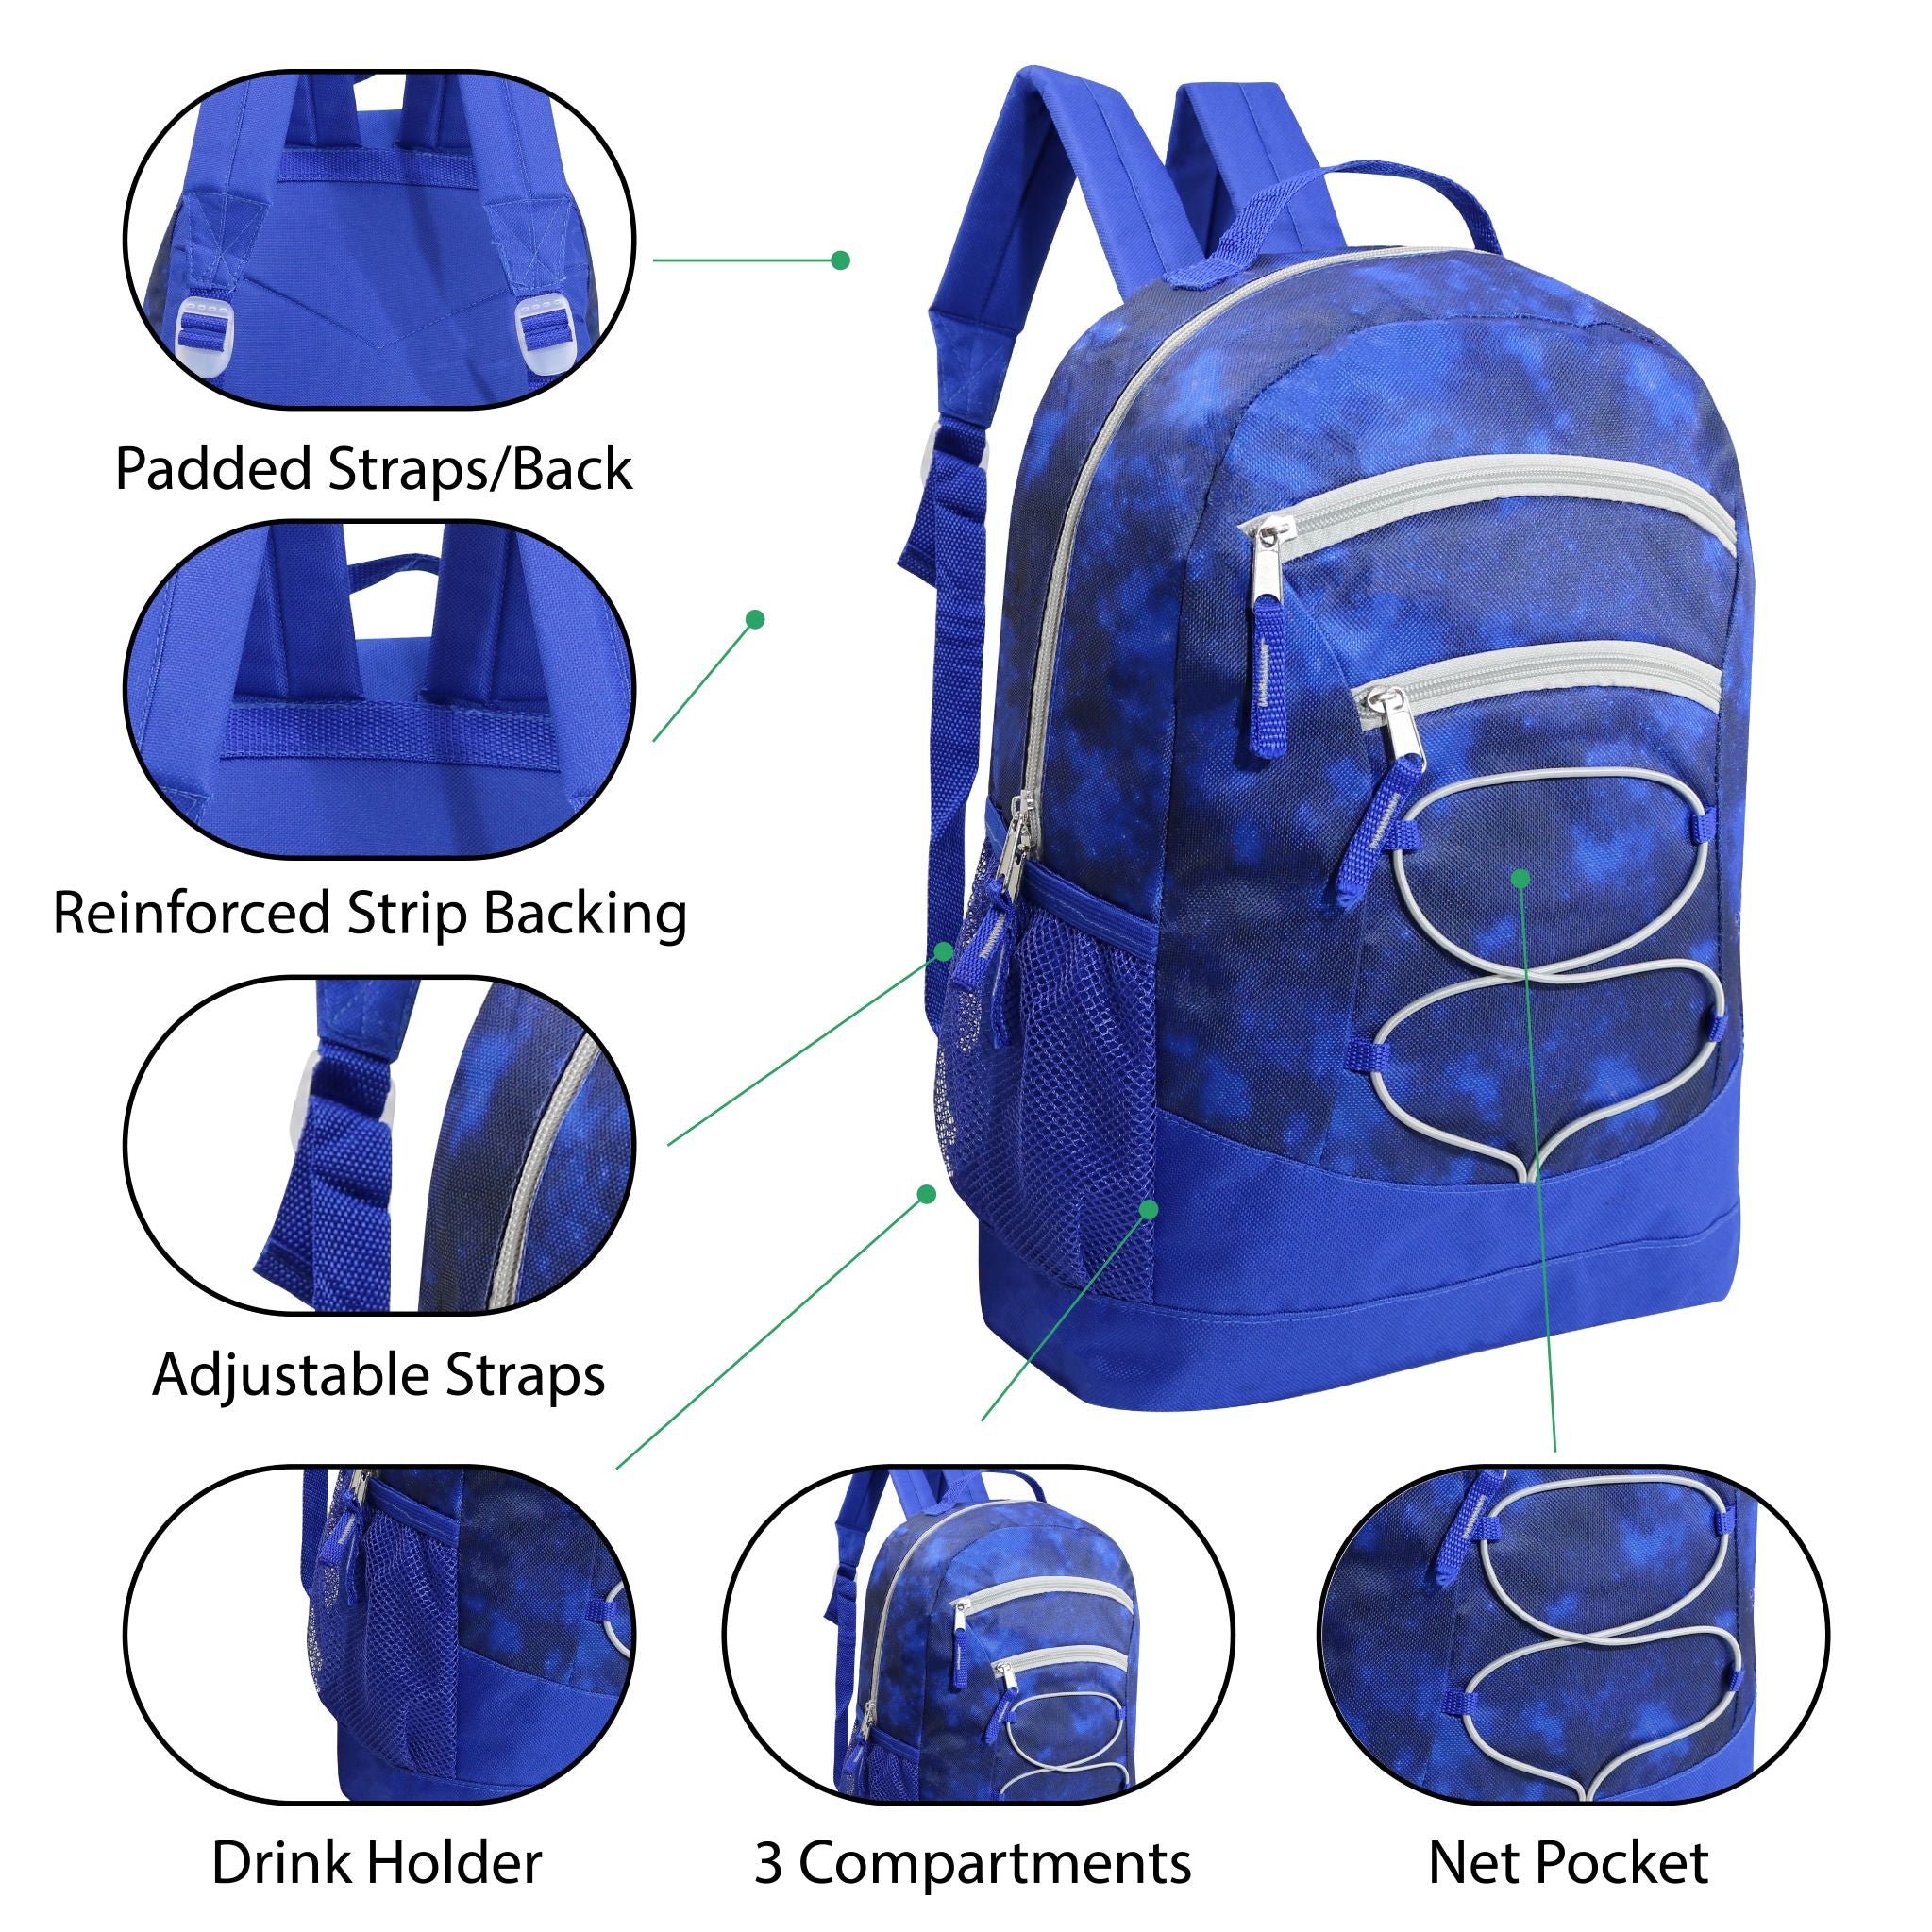 17" Bungee Wholesale Backpack In 8 Prints - Bulk Case Of 24 Backpacks